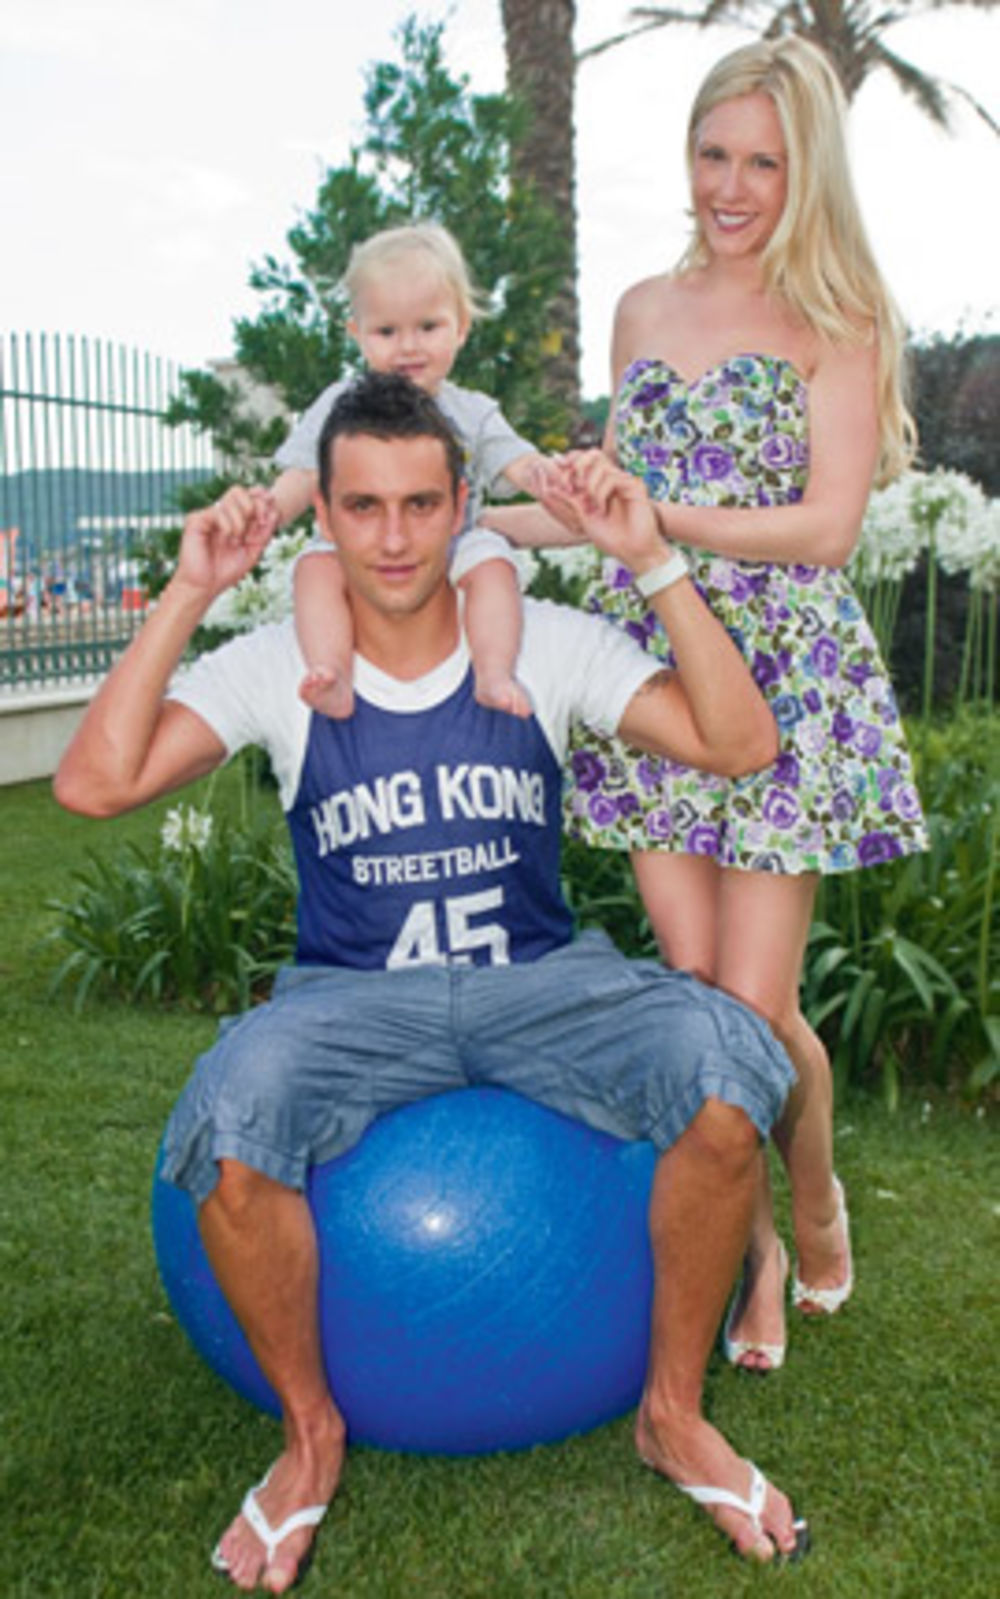 Nakon porodičnog odmora u Bečićima, fudbaler Boško Janković i njegova supruga Dijana priredili su krštenje i proslavu rođendana svom sinu Sergeju, a potom su obeležili i treću godišnjicu braka